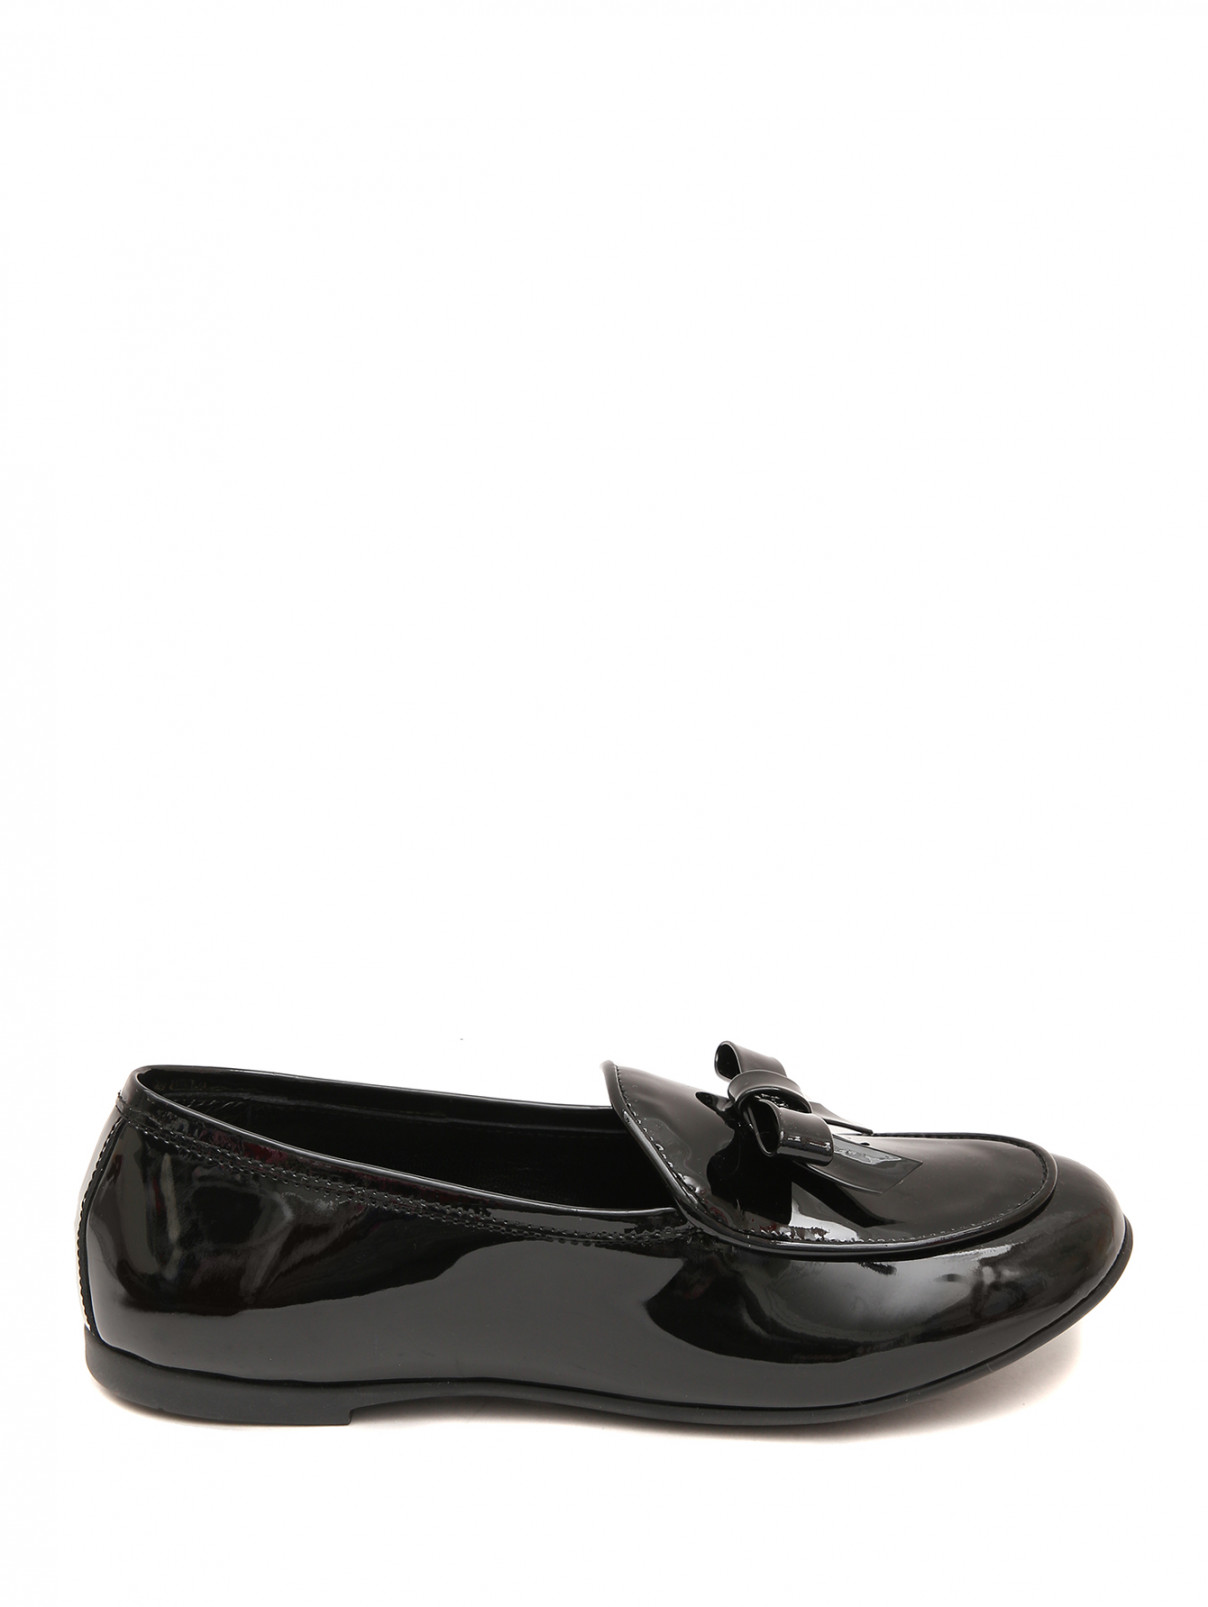 Лакированные туфли с бантиком MONTELPARE TRADITION  –  Обтравка1  – Цвет:  Черный